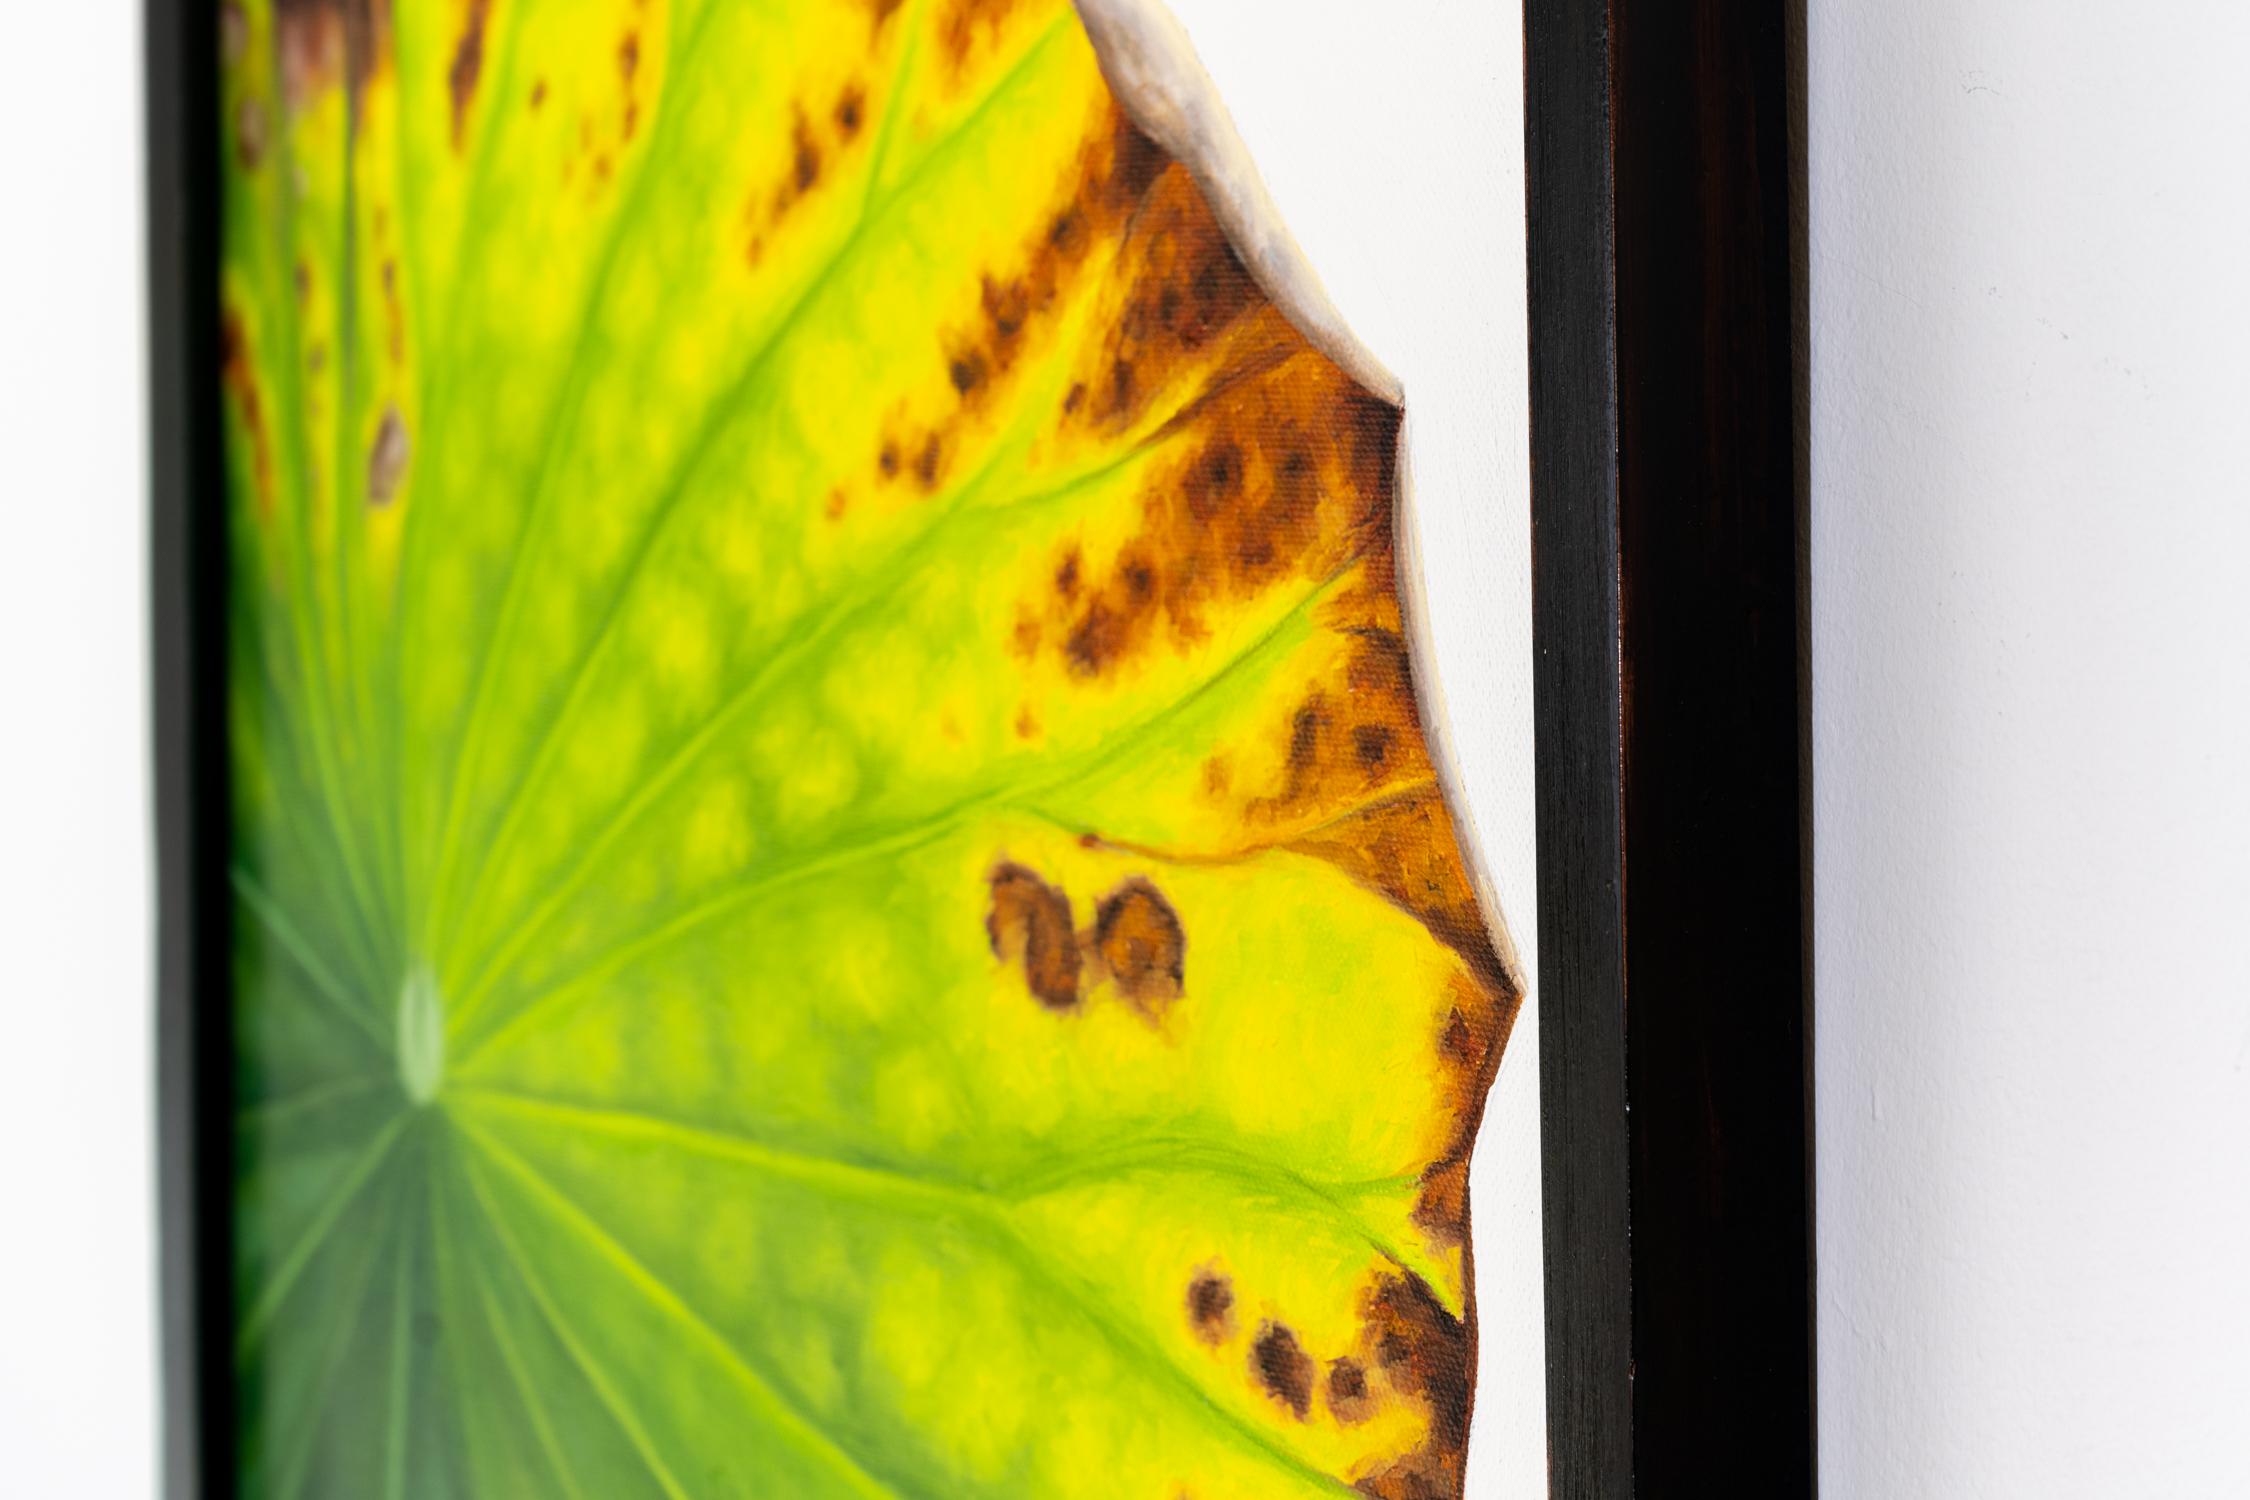 Lotus 68 : Nature morte réaliste photographique d'une feuille de lotus verte sur gris  - Photoréalisme Painting par Frank DePietro